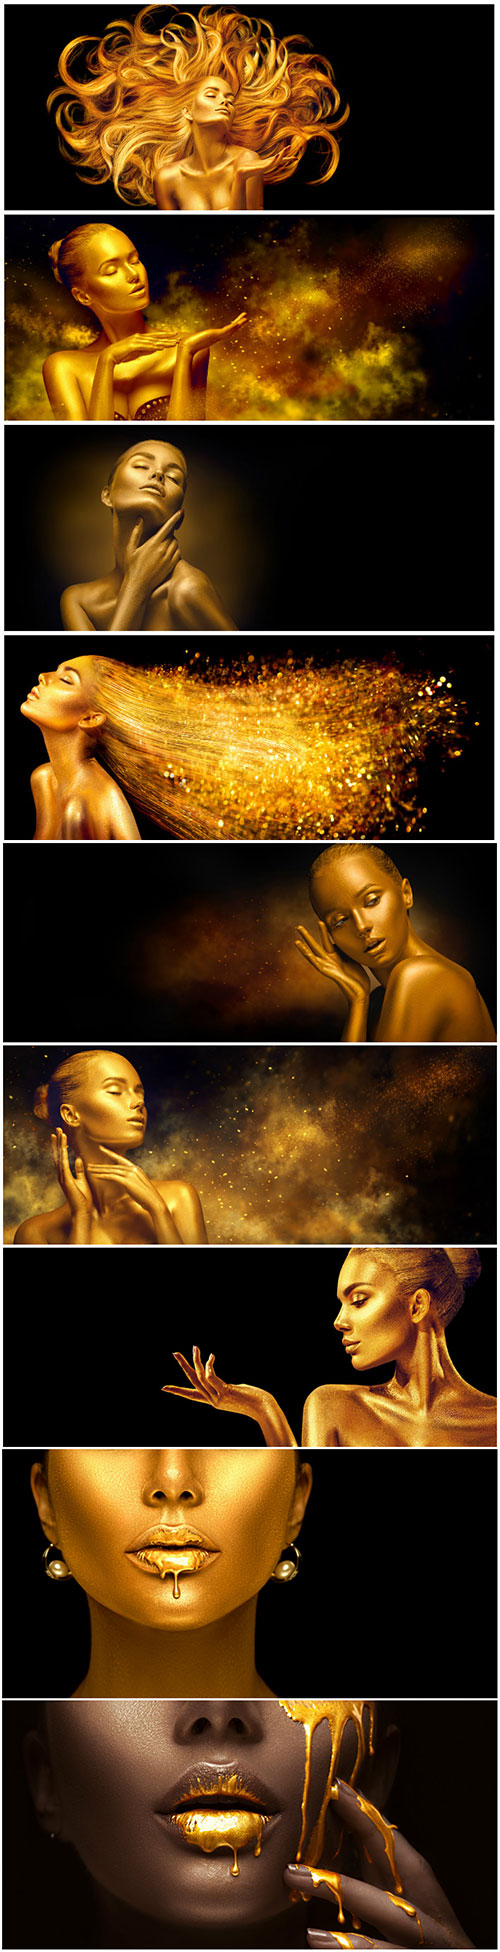 Golden girl - creative stock photo 